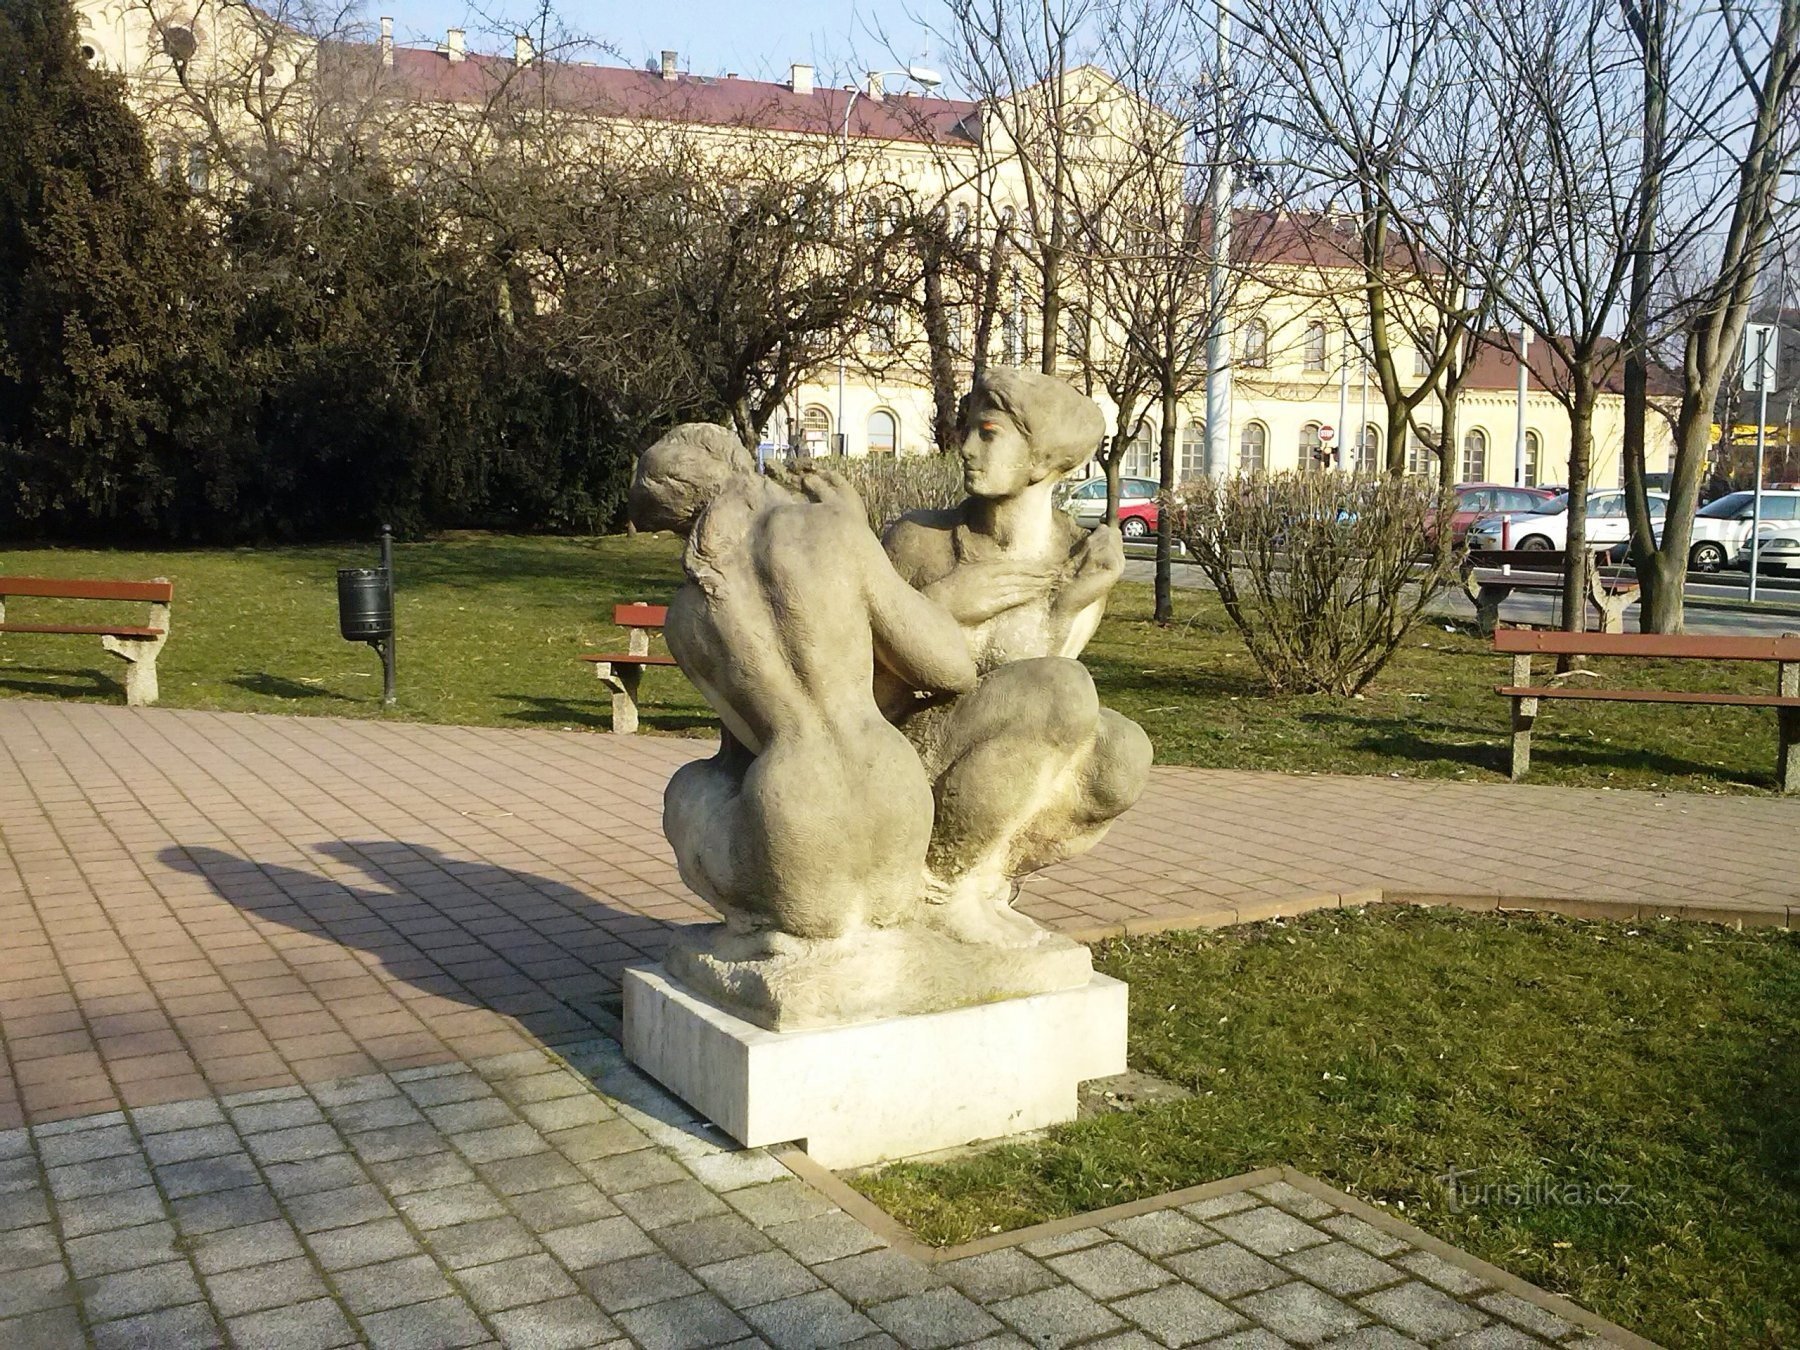 2. Estátuas no parque perto da estação